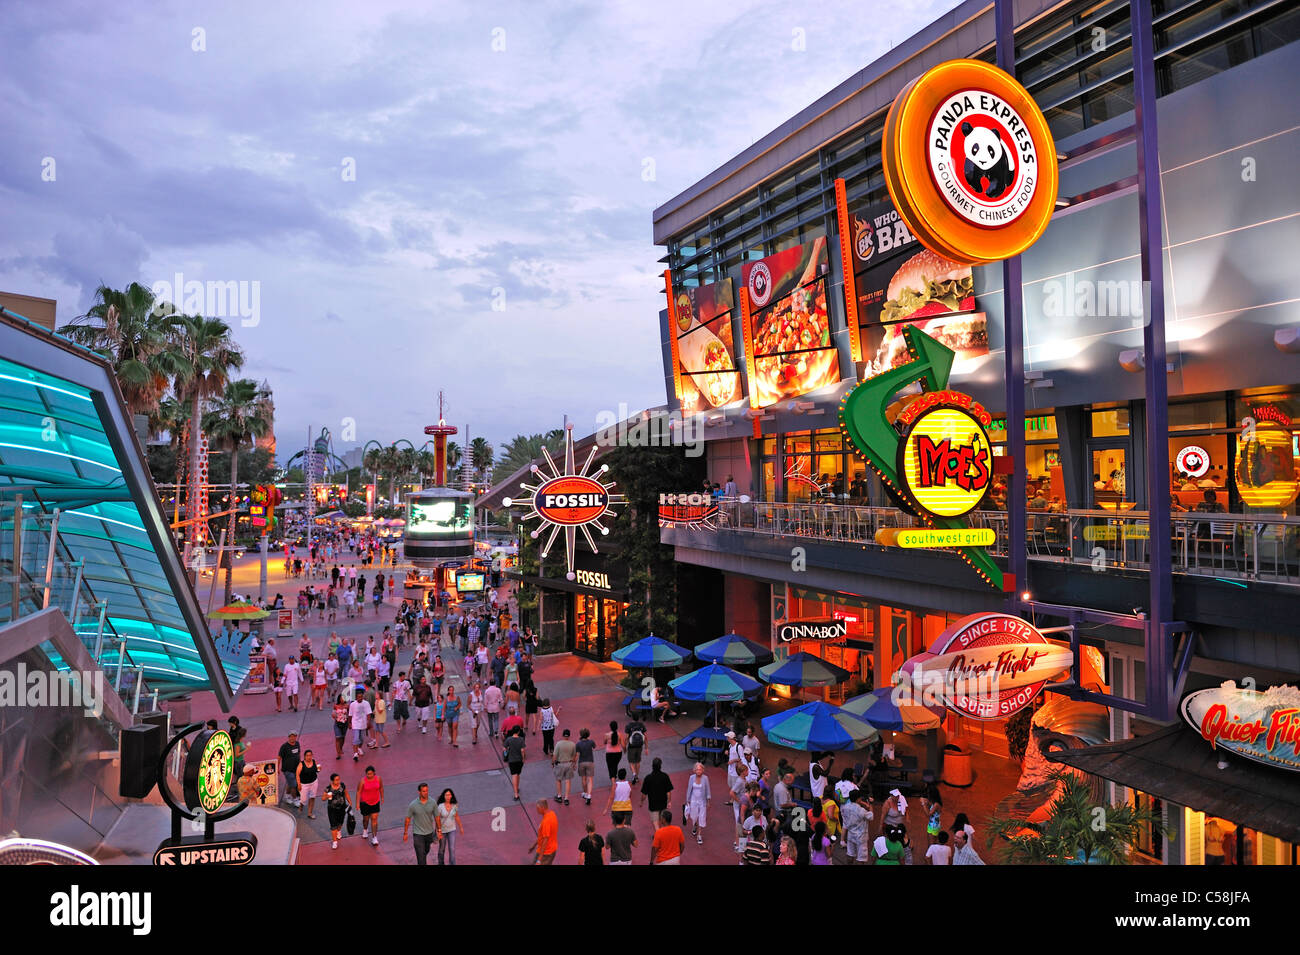 Il City Walk, crepuscolo, intrattenimento, Universal Orlando - Orlando, Florida, Stati Uniti d'America, Stati Uniti, America, visitatori, turisti Foto Stock